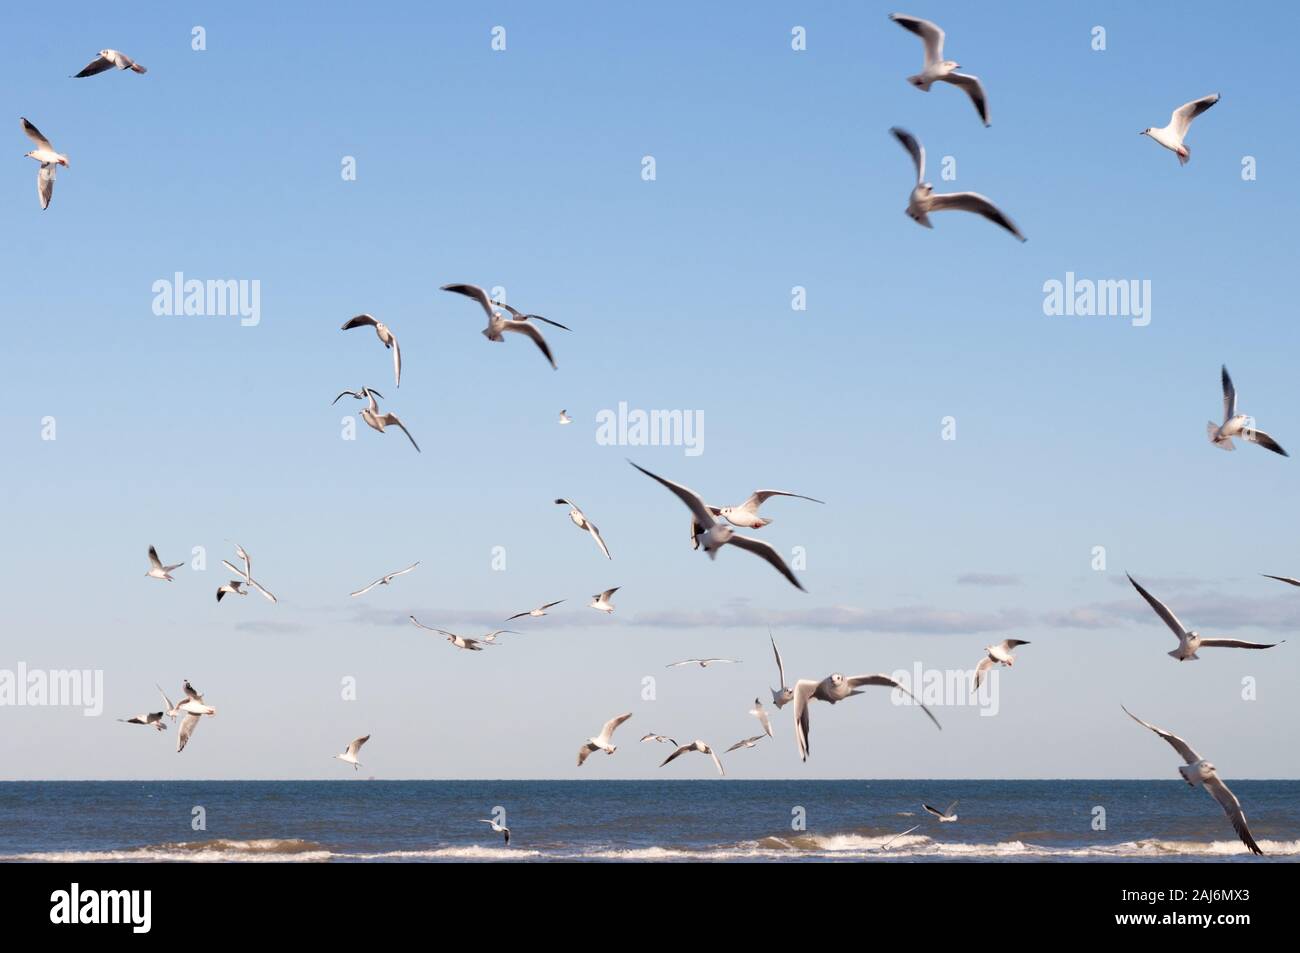 Flying Gabbiani sulla spiaggia. Flock of Seagulls in volo,Seagull battenti sky come concetto di libertà.gabbiani in volo in diverse forme e con diverse direzioni Foto Stock